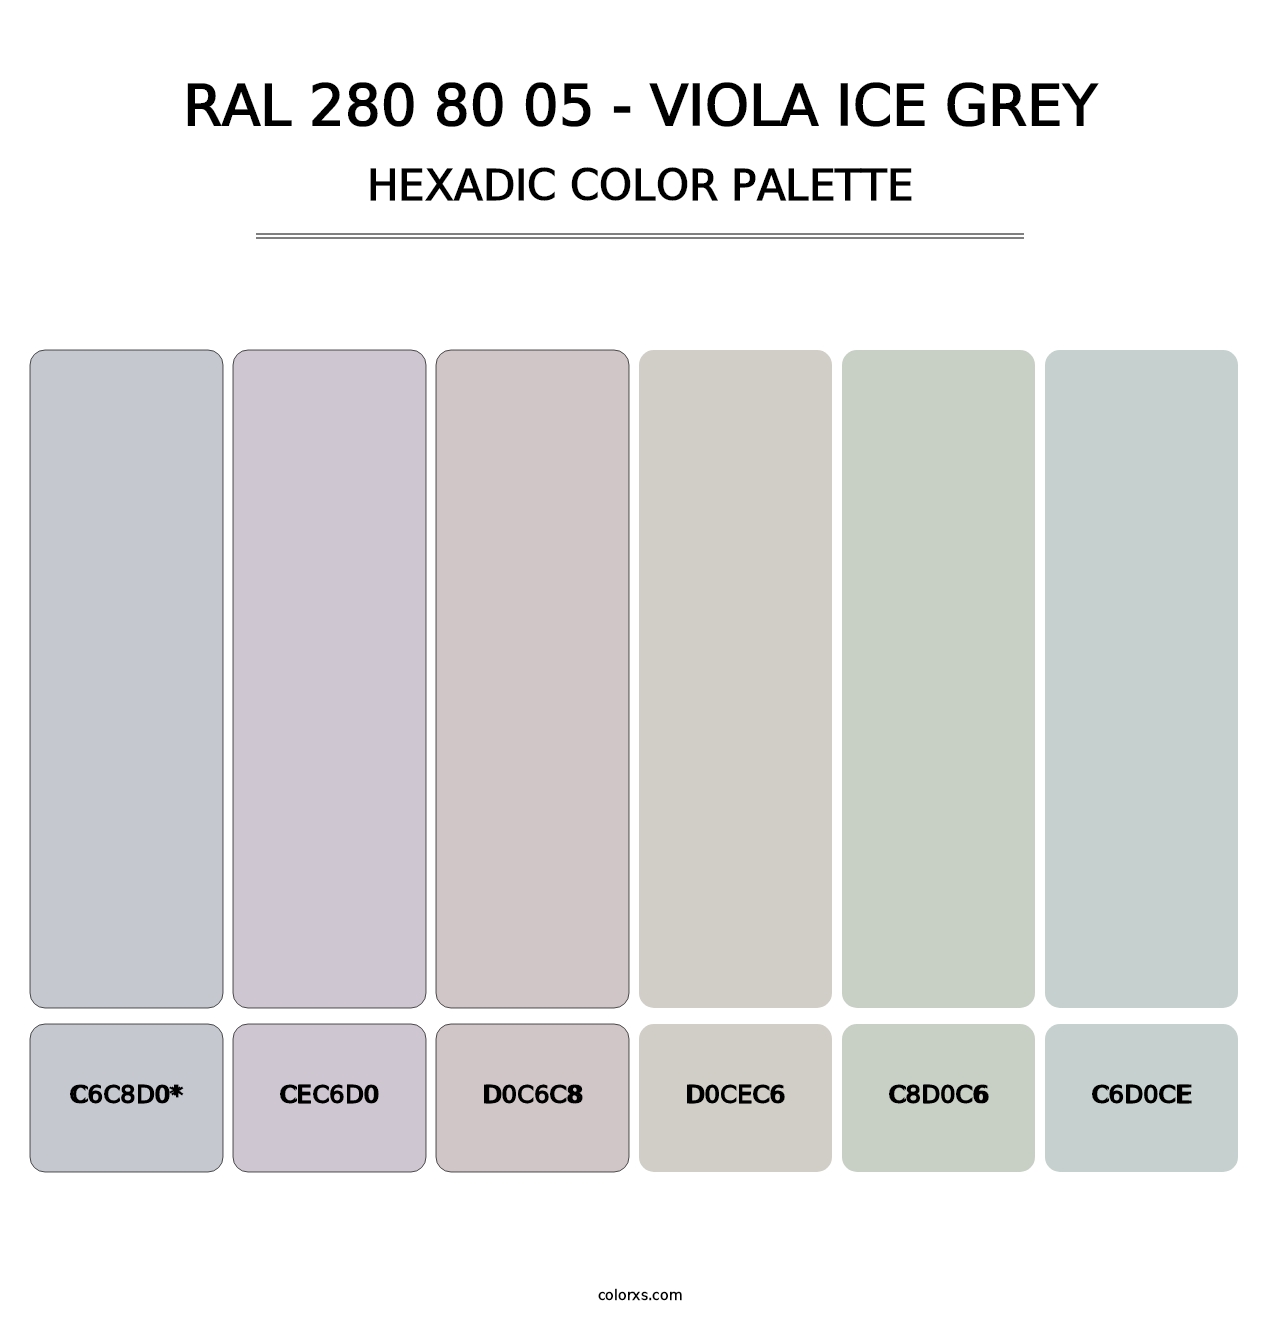 RAL 280 80 05 - Viola Ice Grey - Hexadic Color Palette